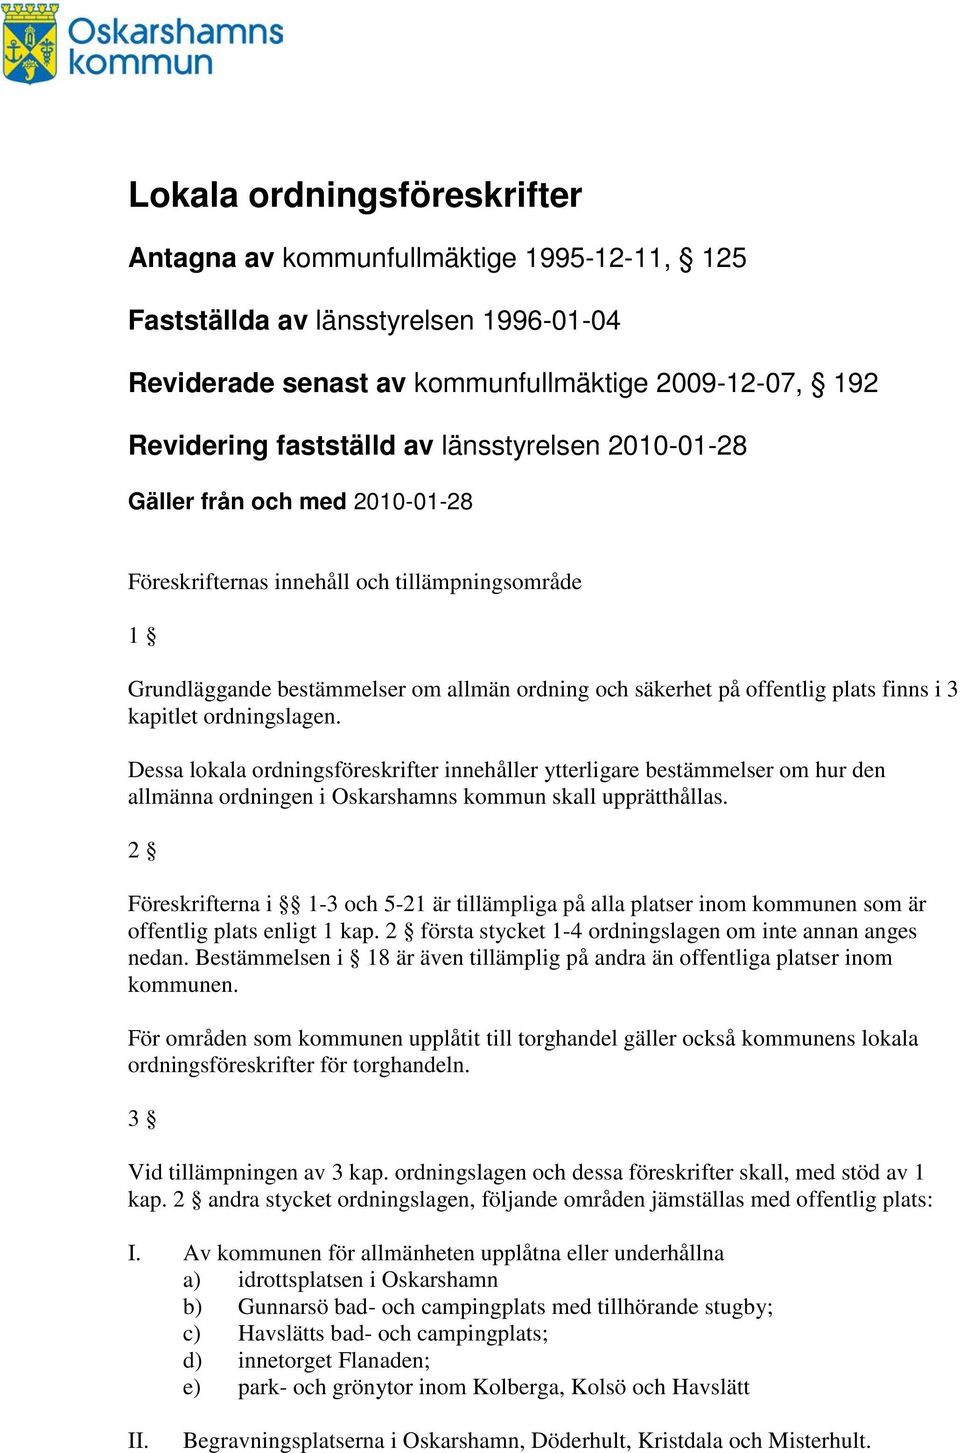 Dessa lokala ordningsföreskrifter innehåller ytterligare bestämmelser om hur den allmänna ordningen i Oskarshamns kommun skall upprätthållas.